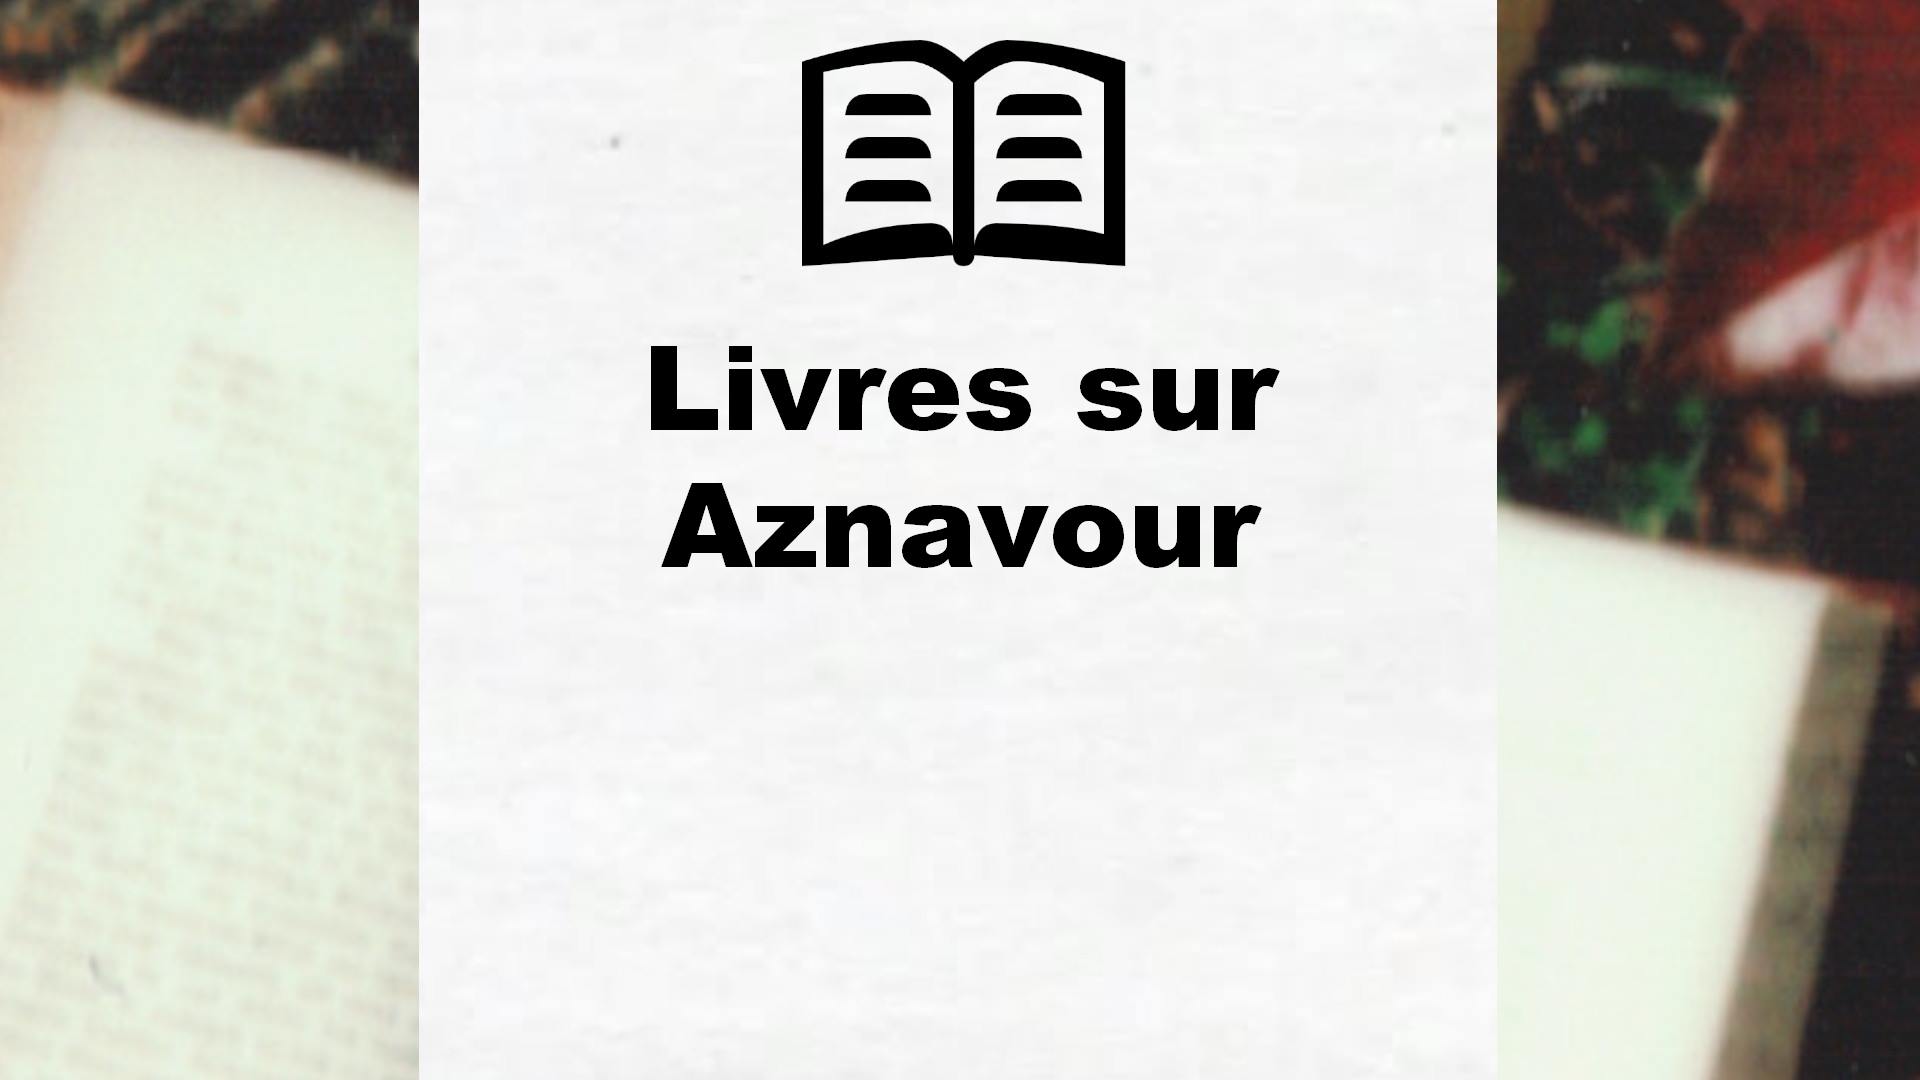 Livres sur Aznavour